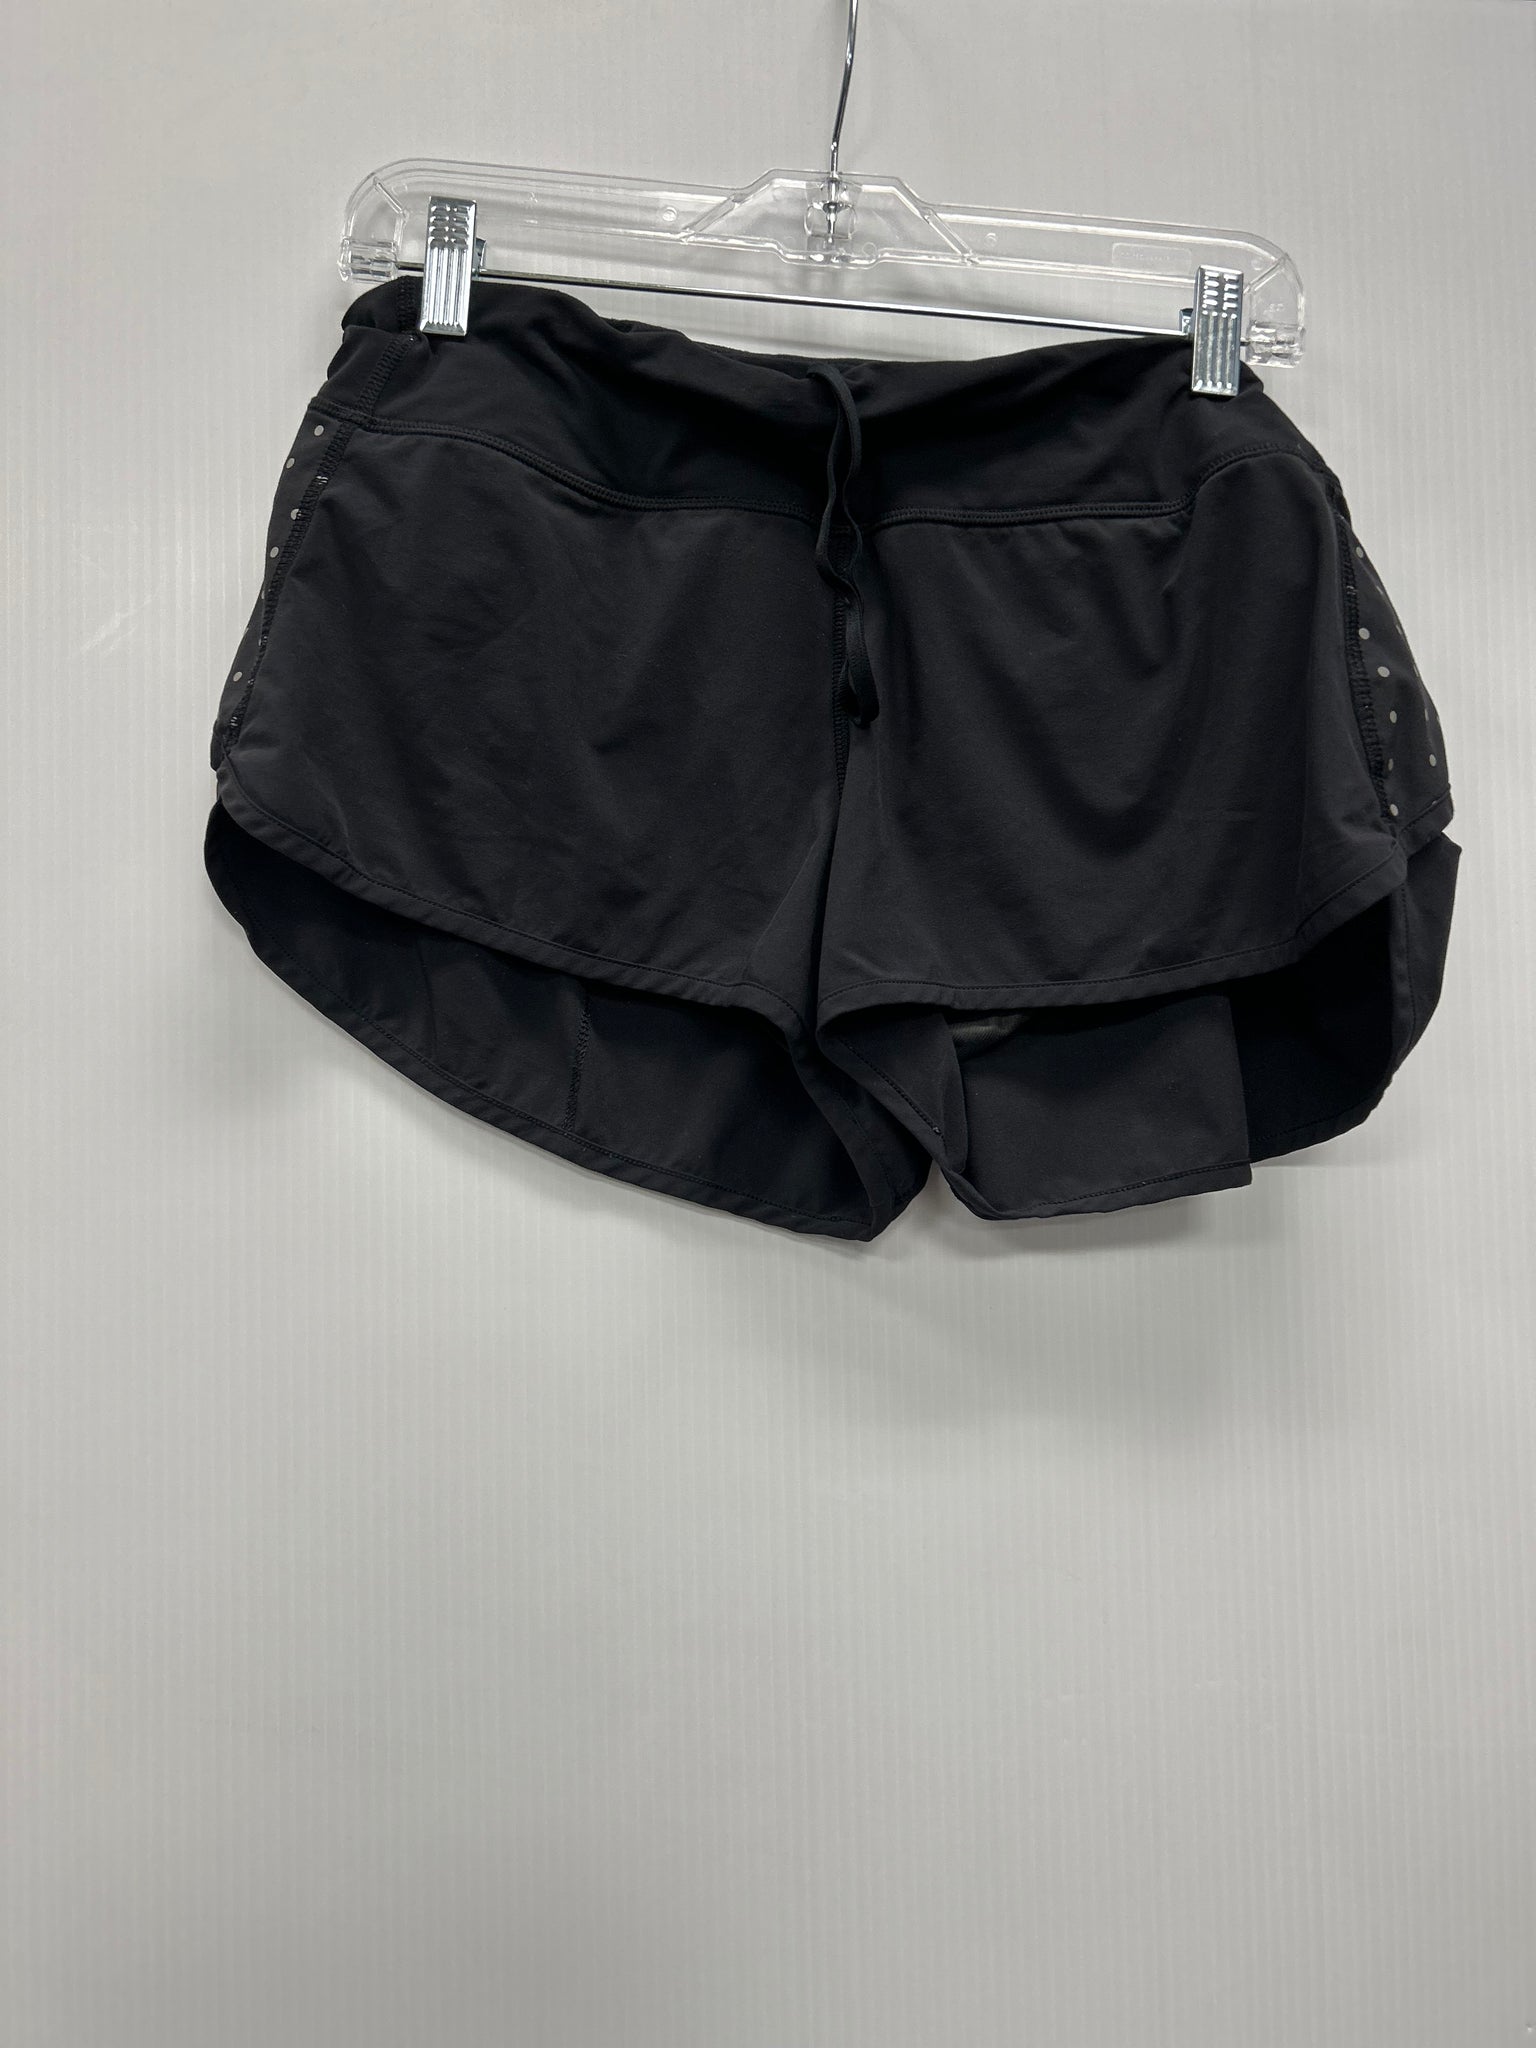 Size 10 Lululemon Shorts #0047